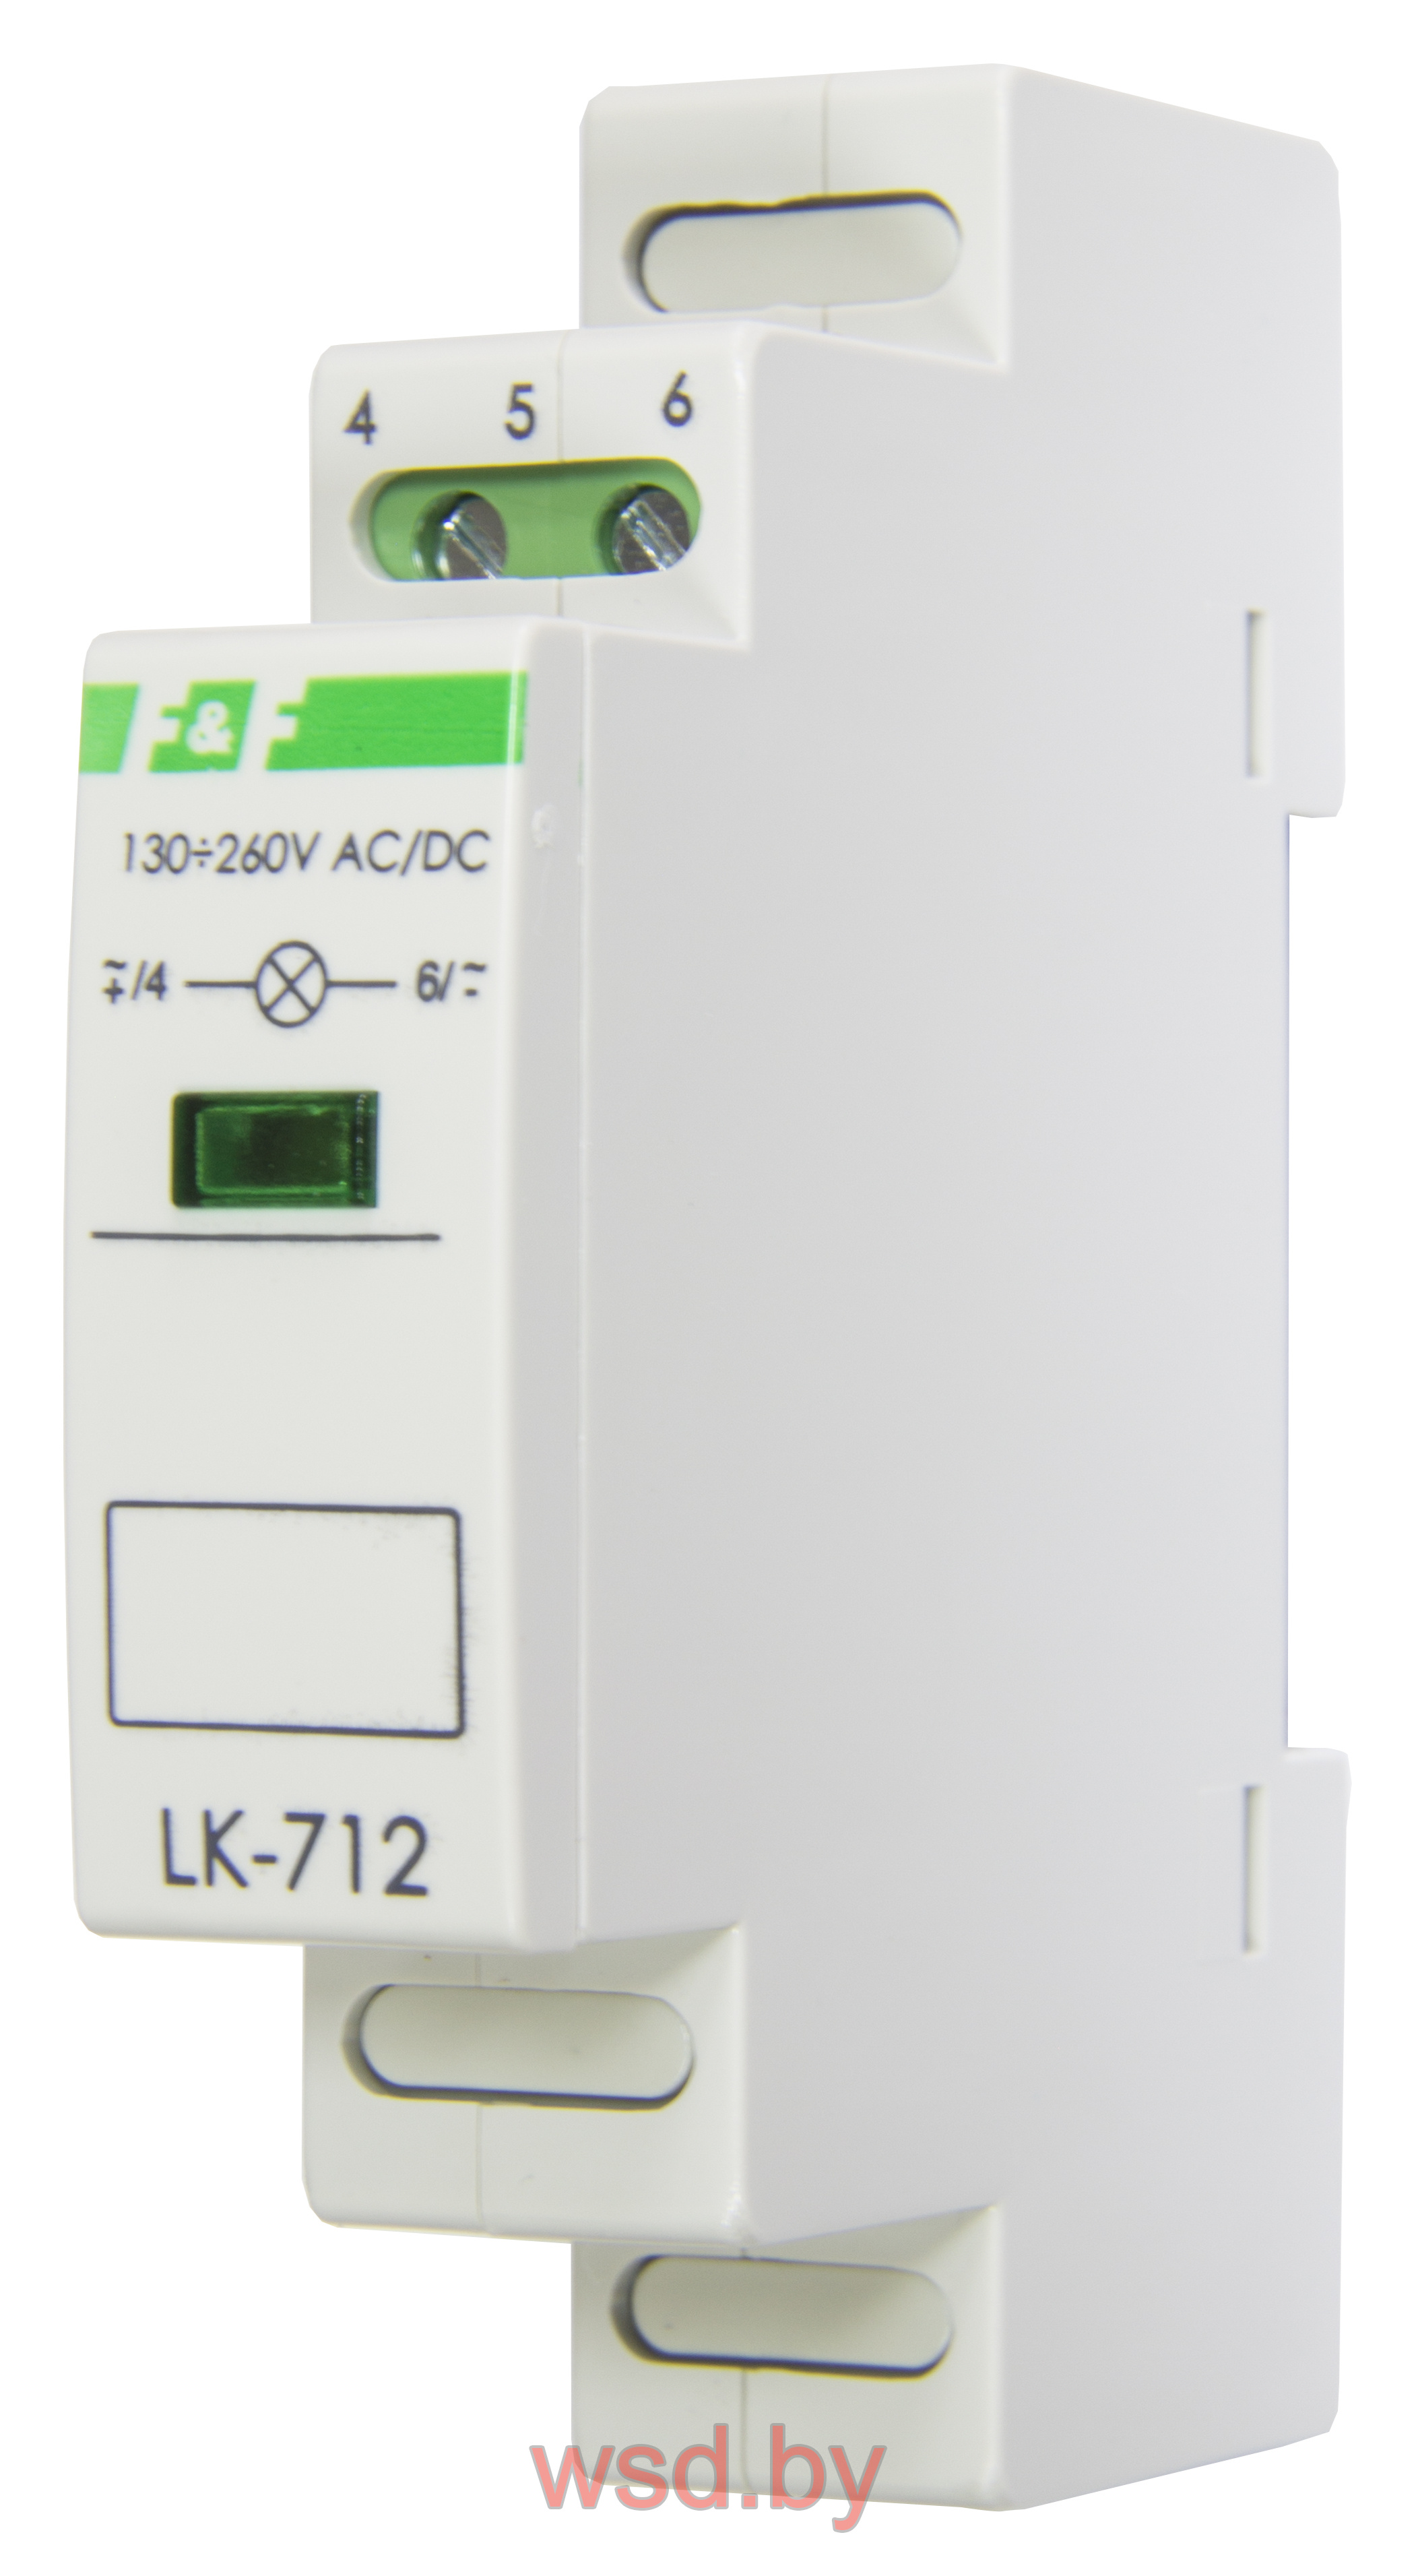 Указатель напряжения LK-712-G сигнализация наличия одной фазы, цвет ЗЕЛЁНЫЙ, 1 модуль, монтаж на DIN-рейке 130-260 В AC/DC  IP20